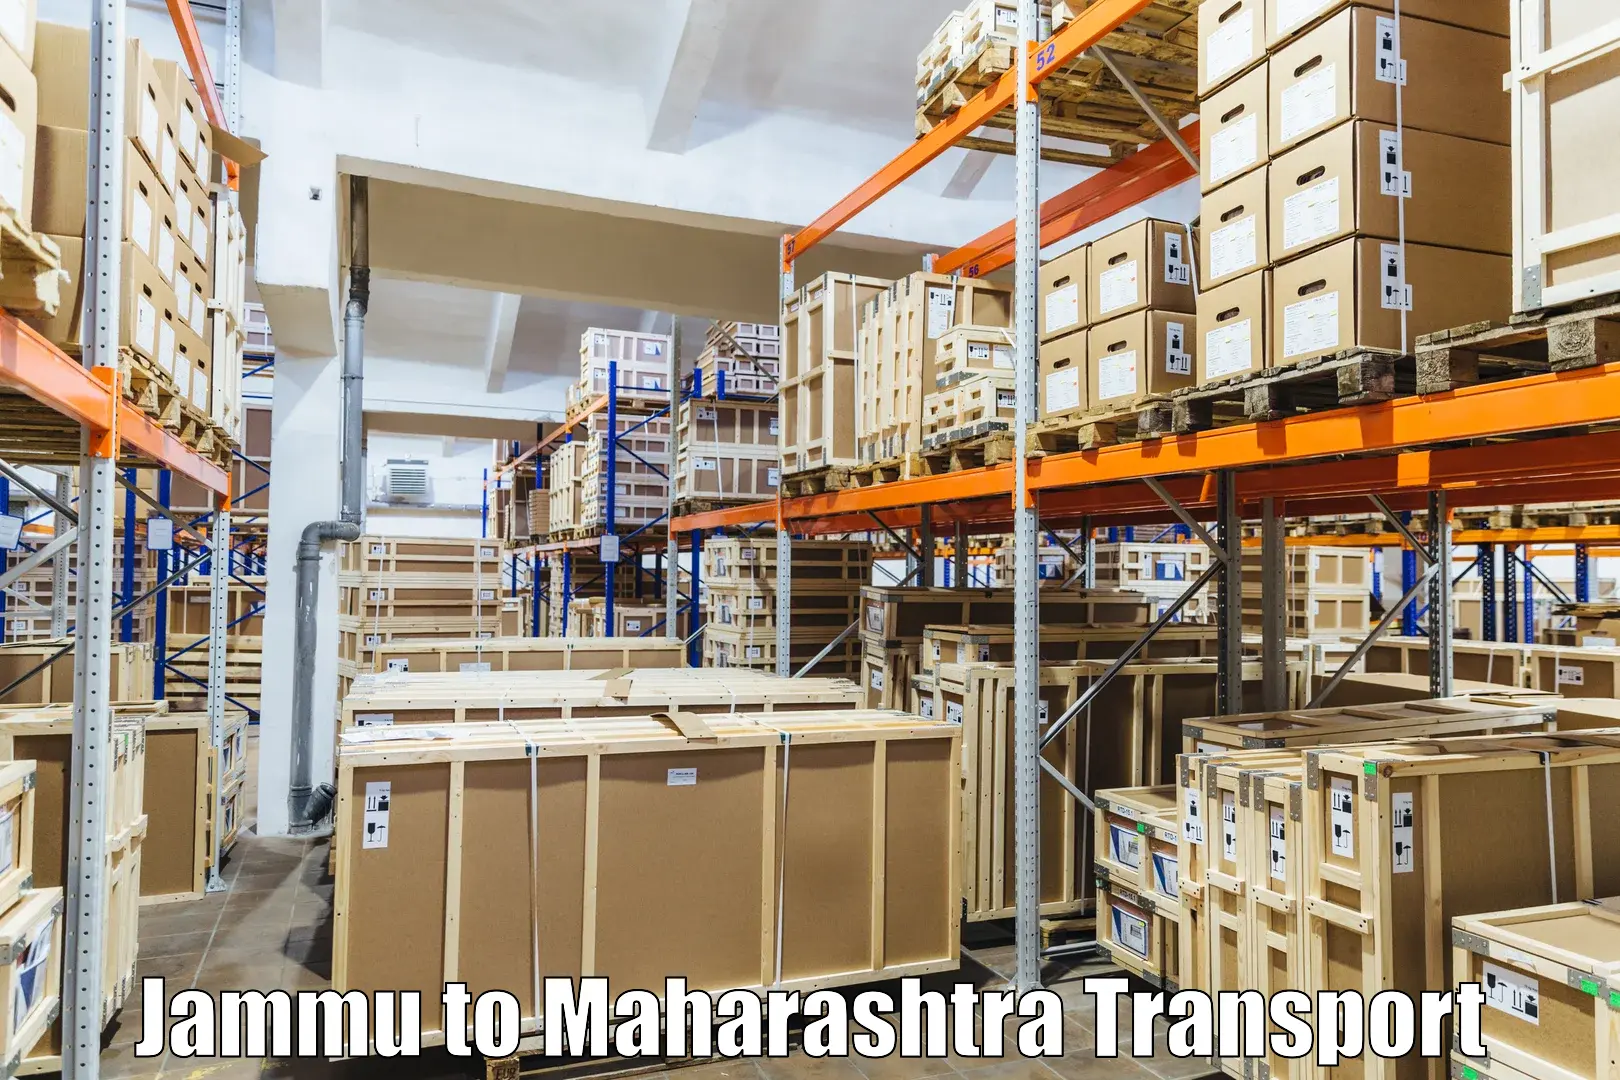 All India transport service Jammu to Maharashtra